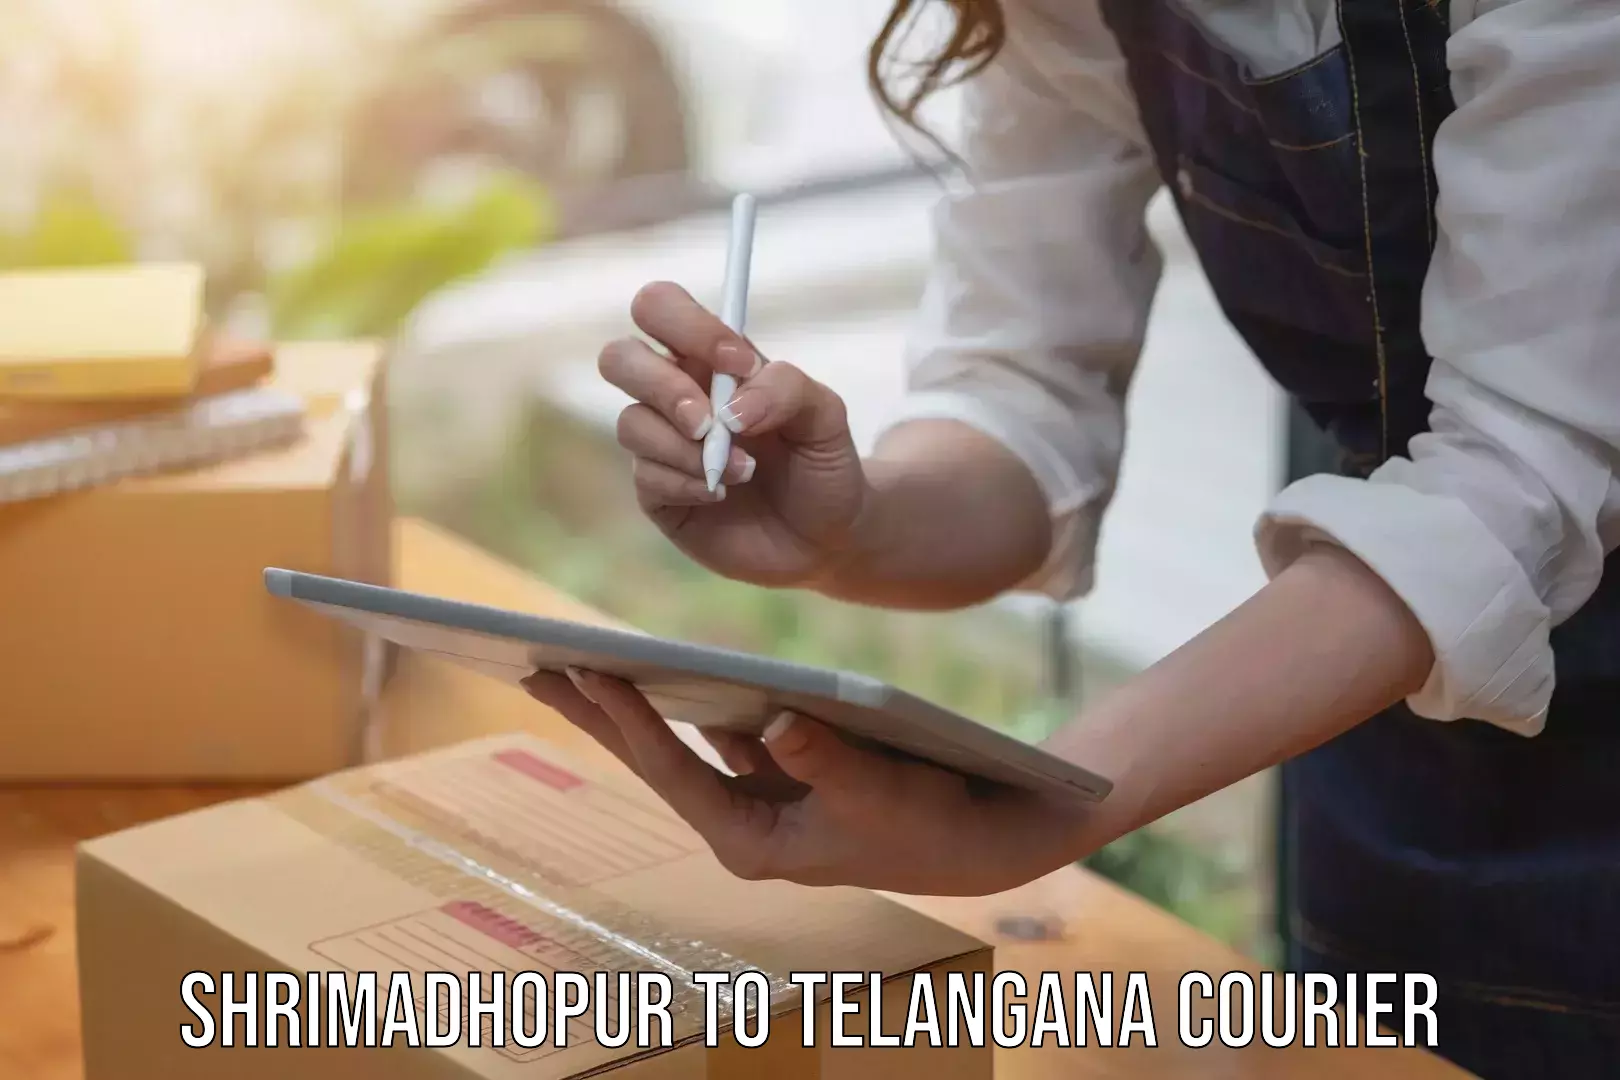 Courier insurance Shrimadhopur to Ramagundam